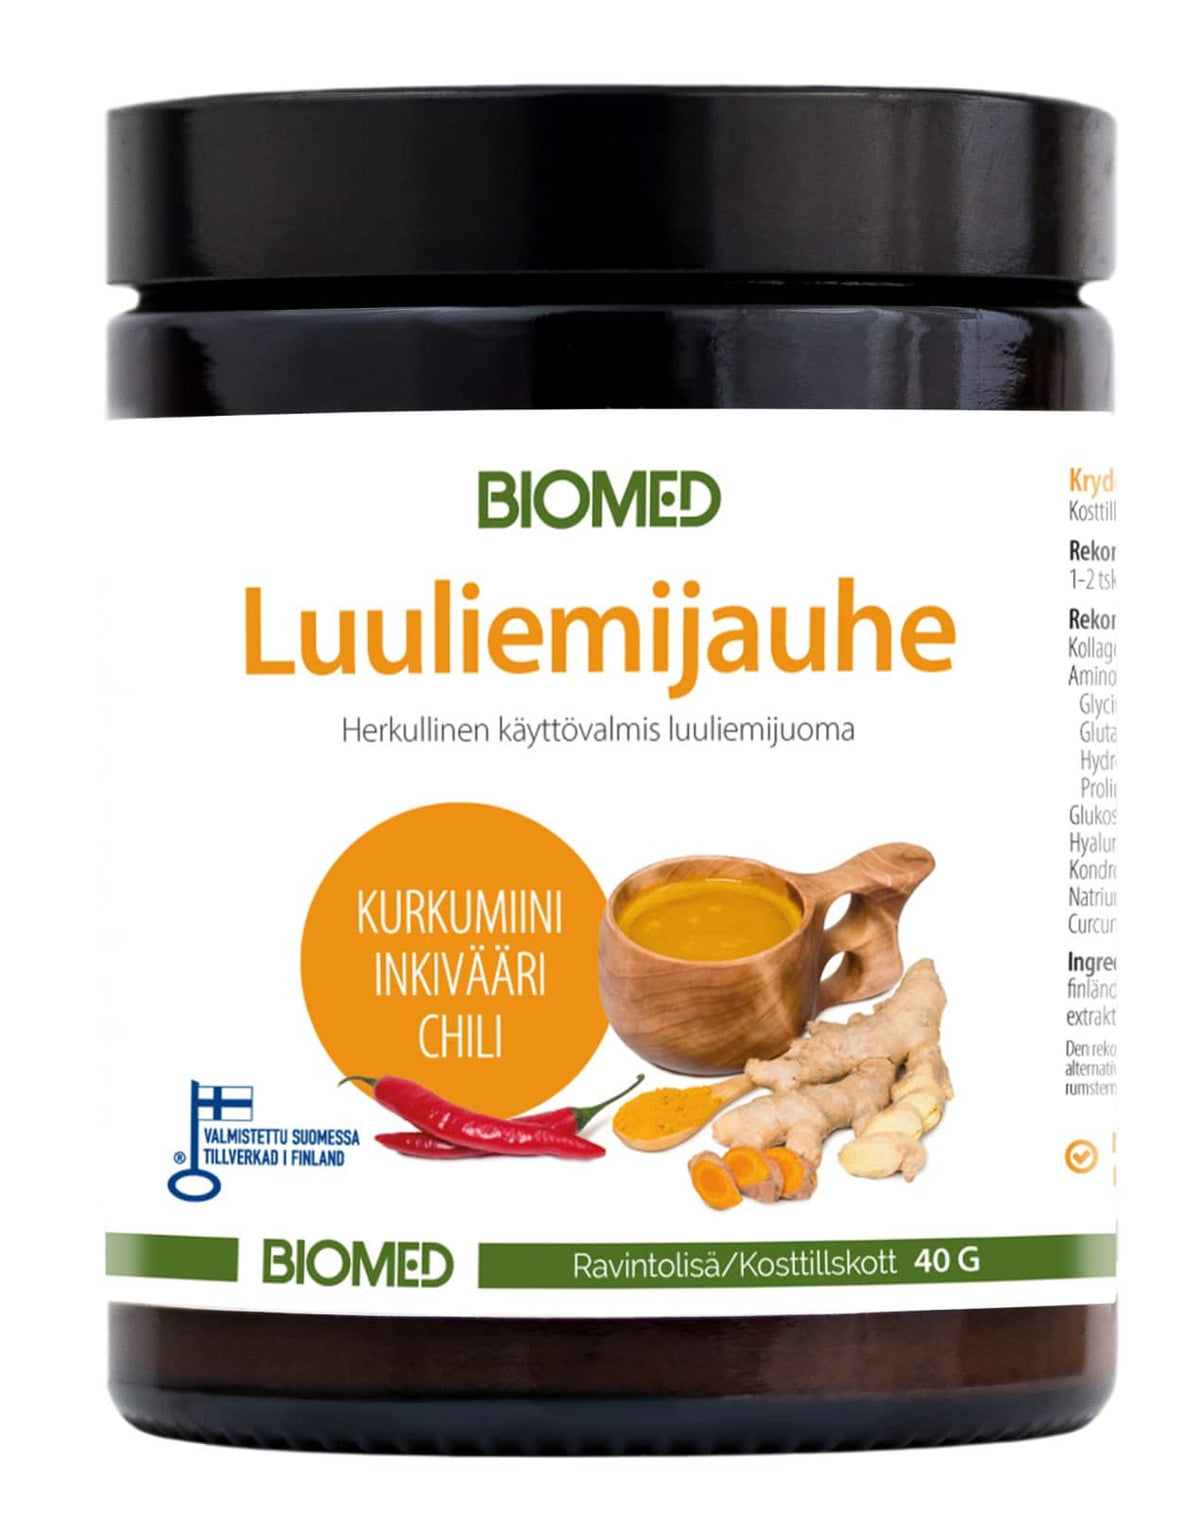 Biomed Luuliemijauhe Kurkumiini + Inkivääri + Chili 40 g.